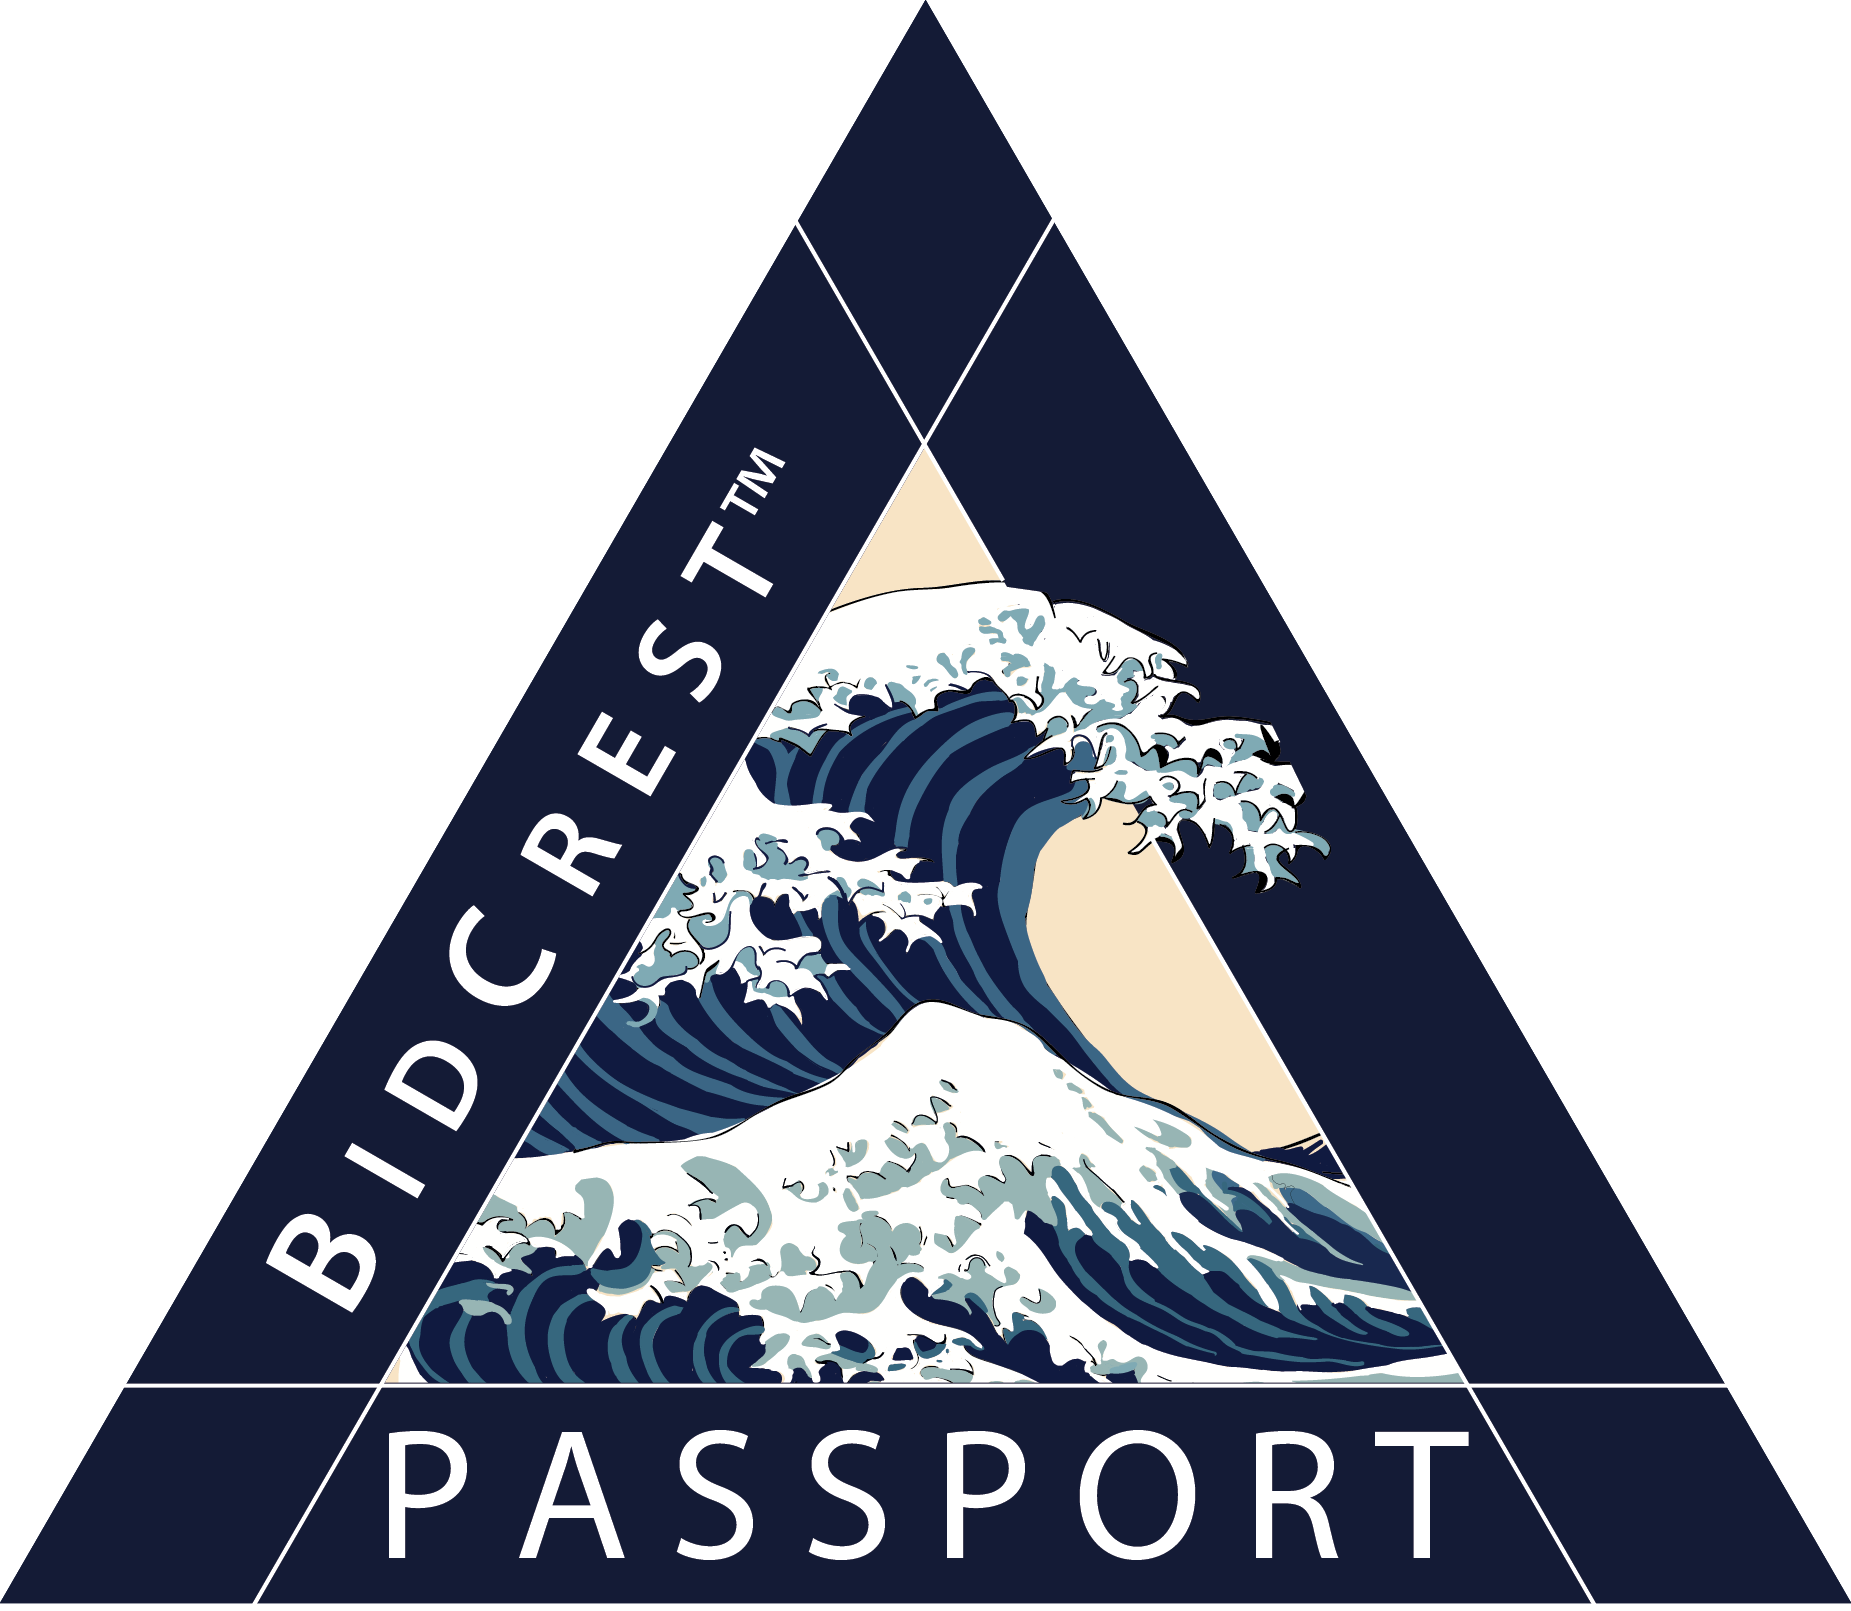 bidcrest_passport